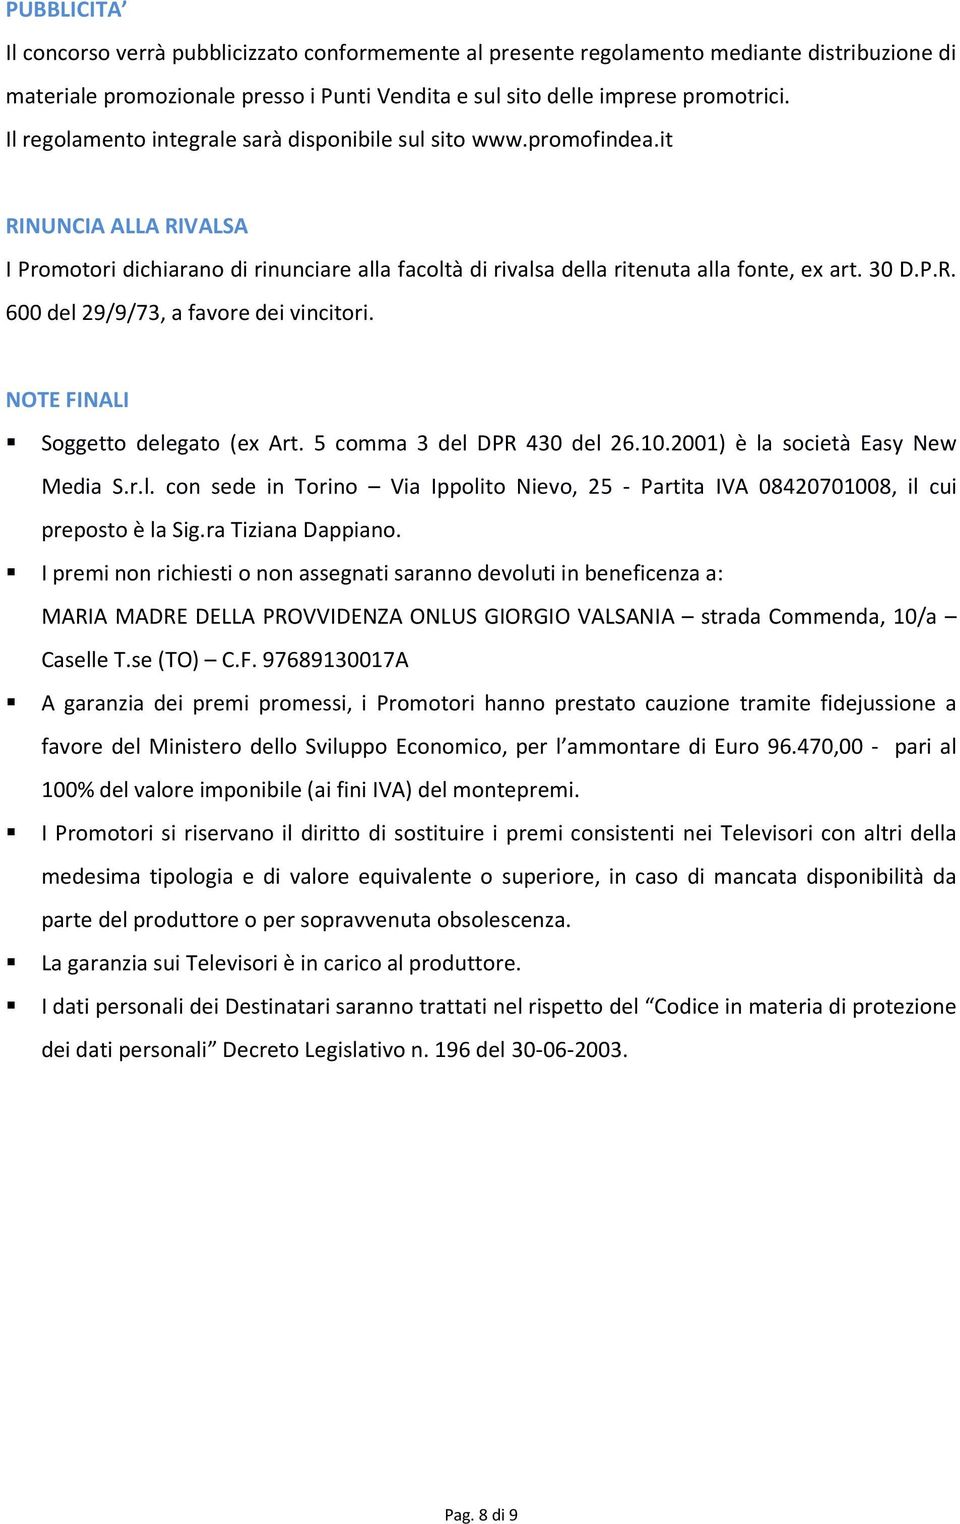 NOTE FINALI Soggetto delegato (ex Art. 5 comma 3 del DPR 430 del 26.10.2001) è la società Easy New Media S.r.l. con sede in Torino Via Ippolito Nievo, 25 - Partita IVA 08420701008, il cui preposto è la Sig.